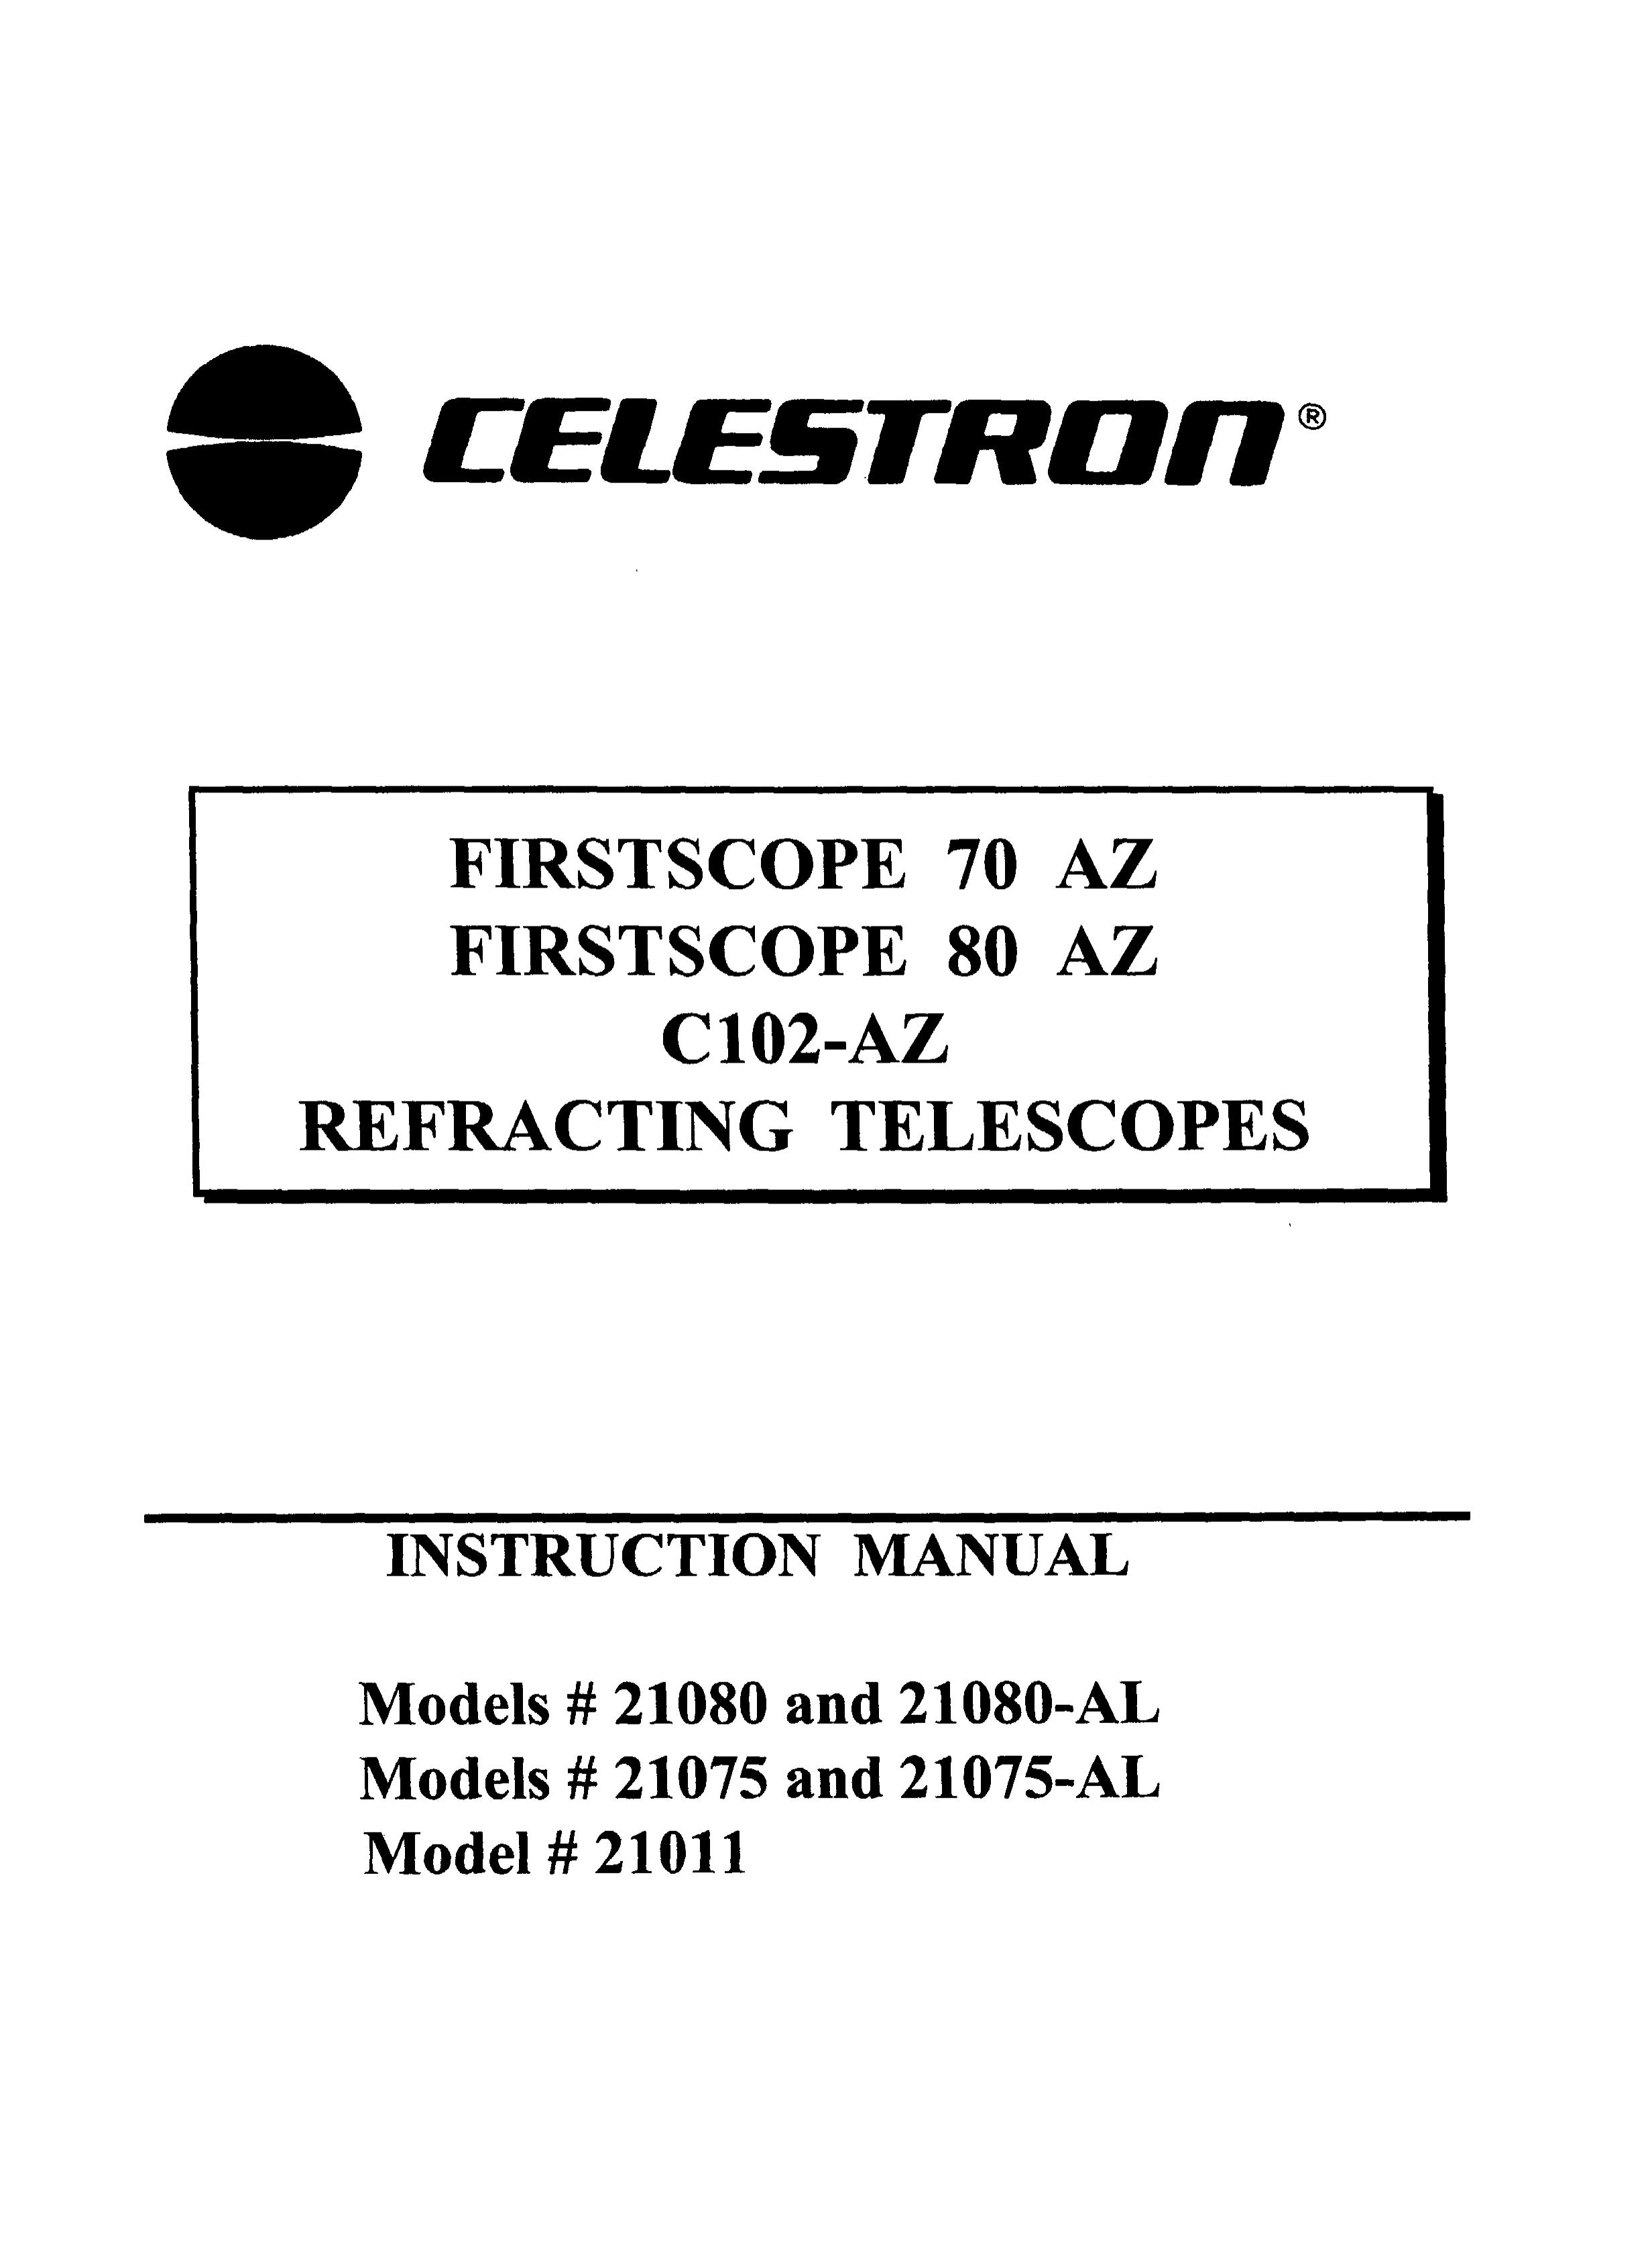 Celestron 21080-AL Telescope User Manual